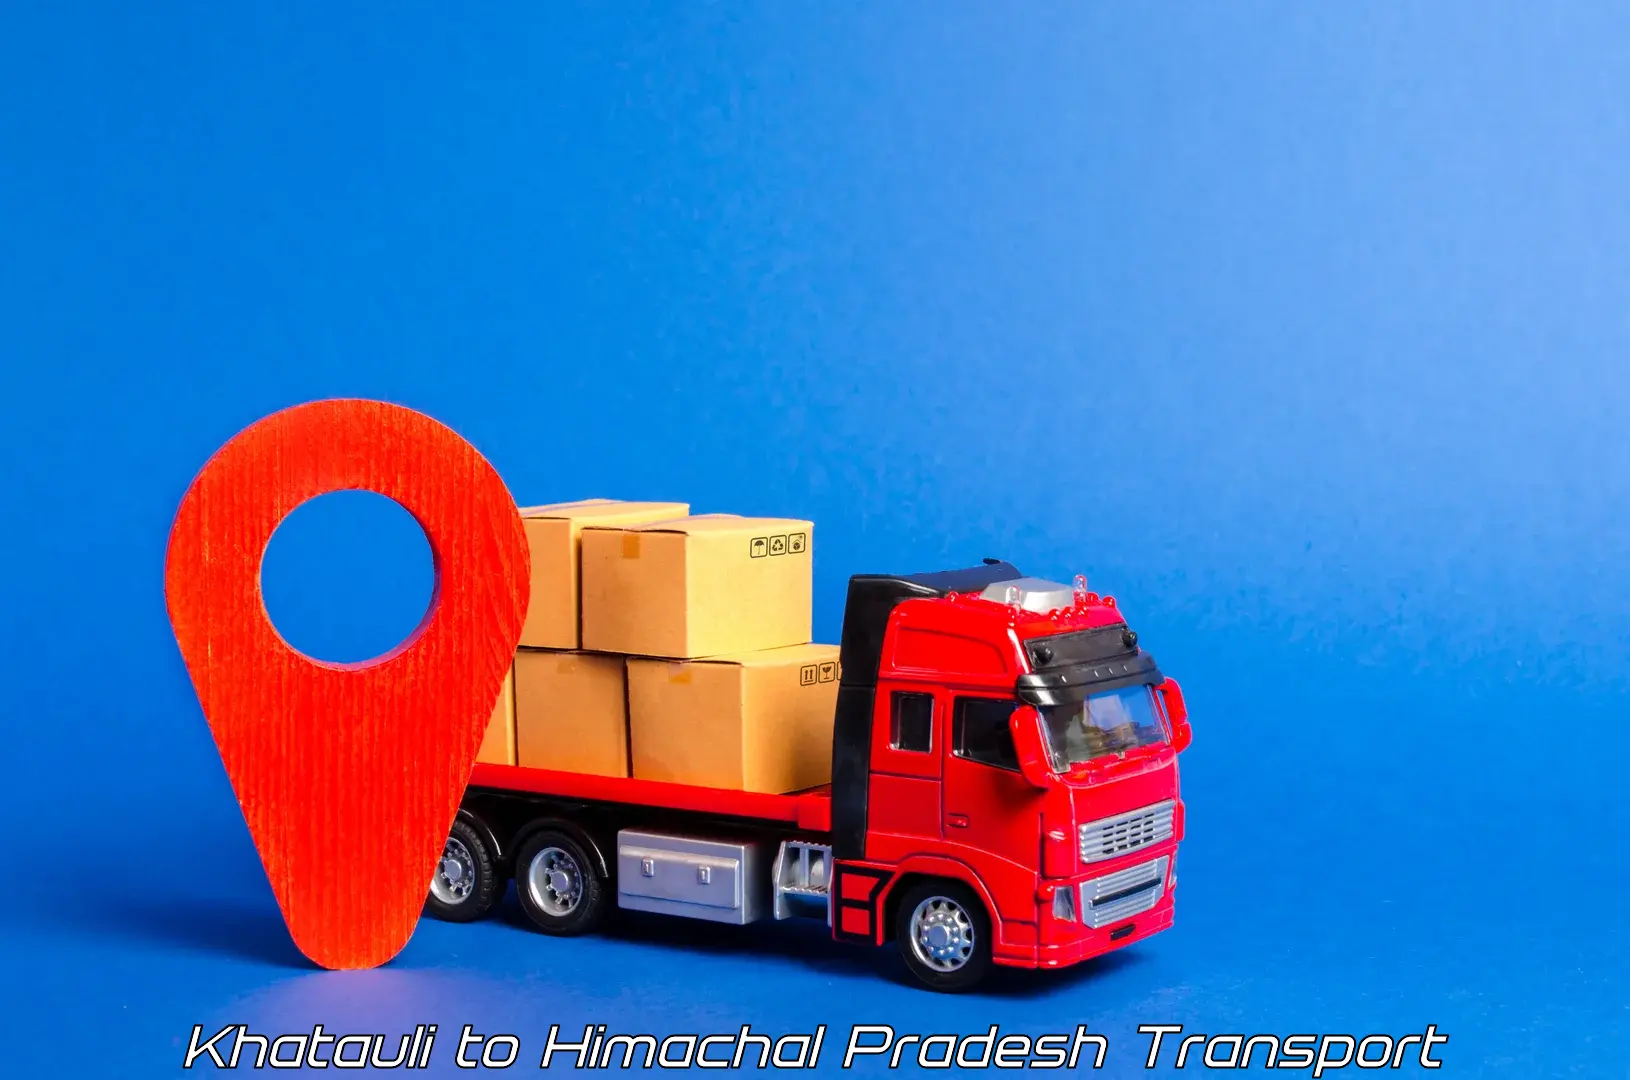 Land transport services Khatauli to Bangana